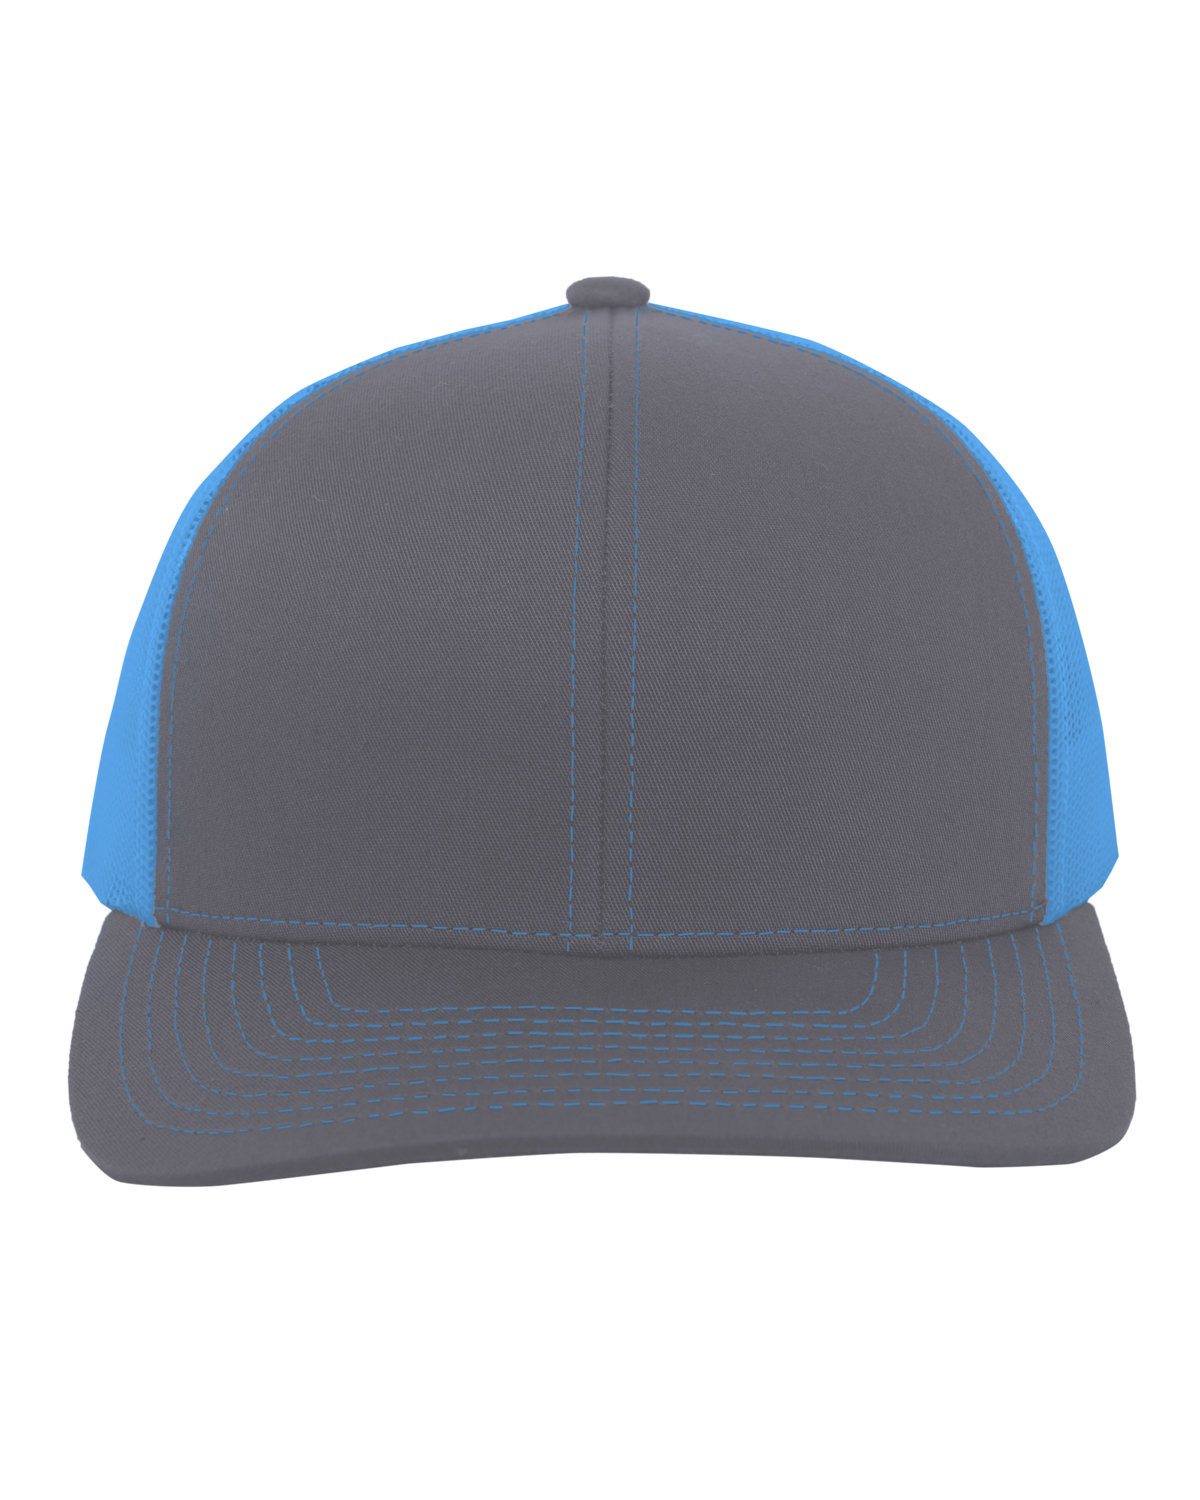 Pacific Headwear Trucker Snapback Hat GRAPHITE/ N BLUE 